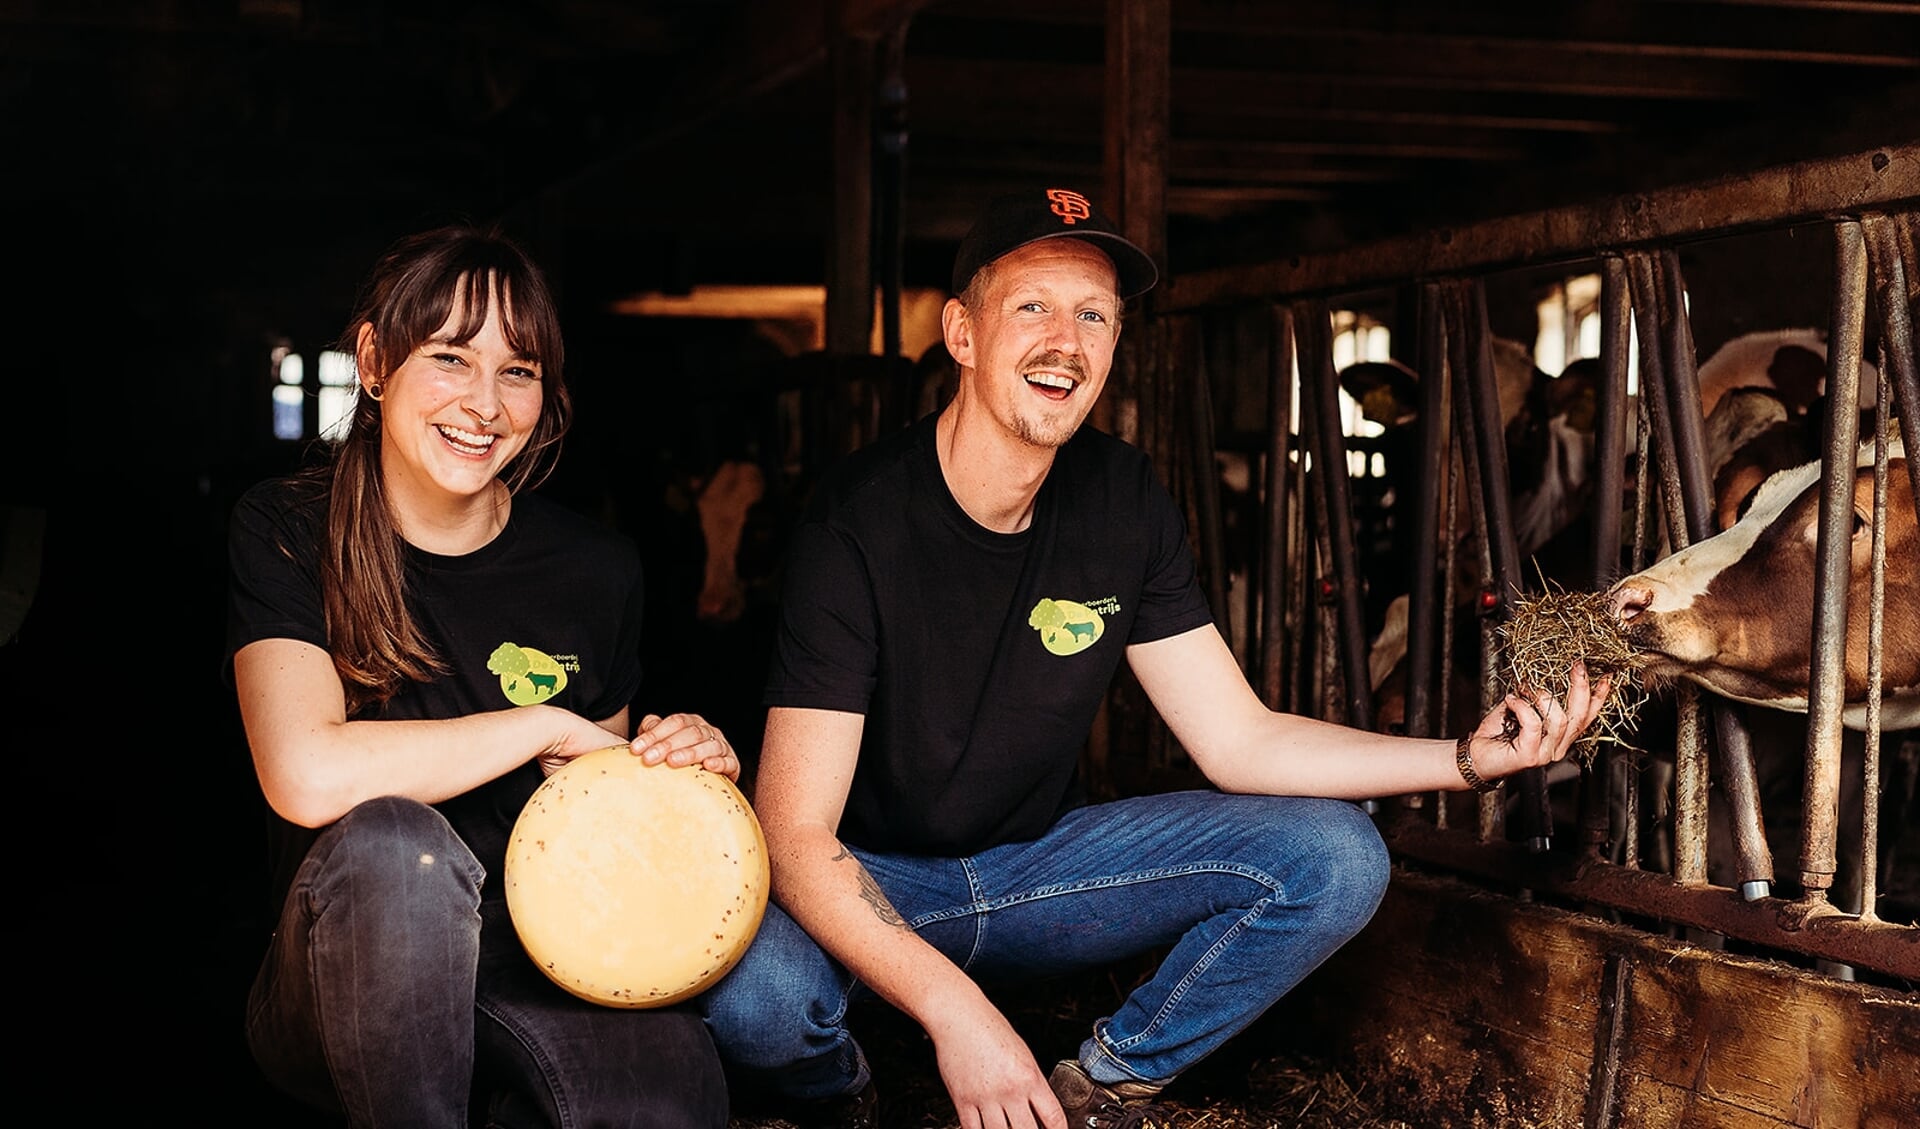 Dit jonge stel, Saskia Hebel en Erik van der Hoeven, hopen na een succesvolle crowdfunding verder te kunnen als kaasmaakster en veehouder. Foto: Josine Breukink Fotografie